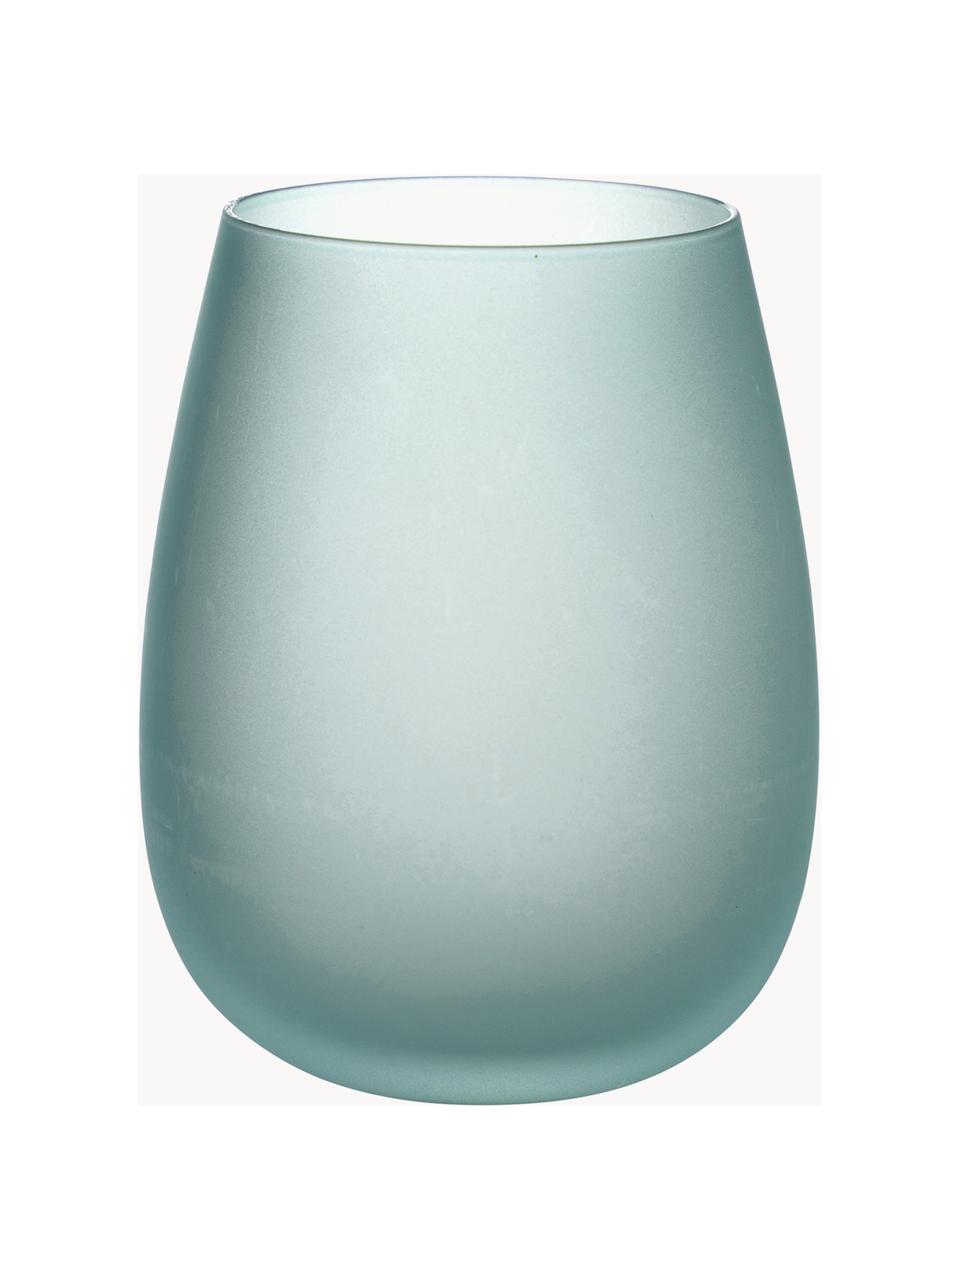 Sada sklenic Happy Hour, 6 dílů, Sklo, Odstíny modré a zelené, Ø 7 cm, V 11 cm, 500 ml